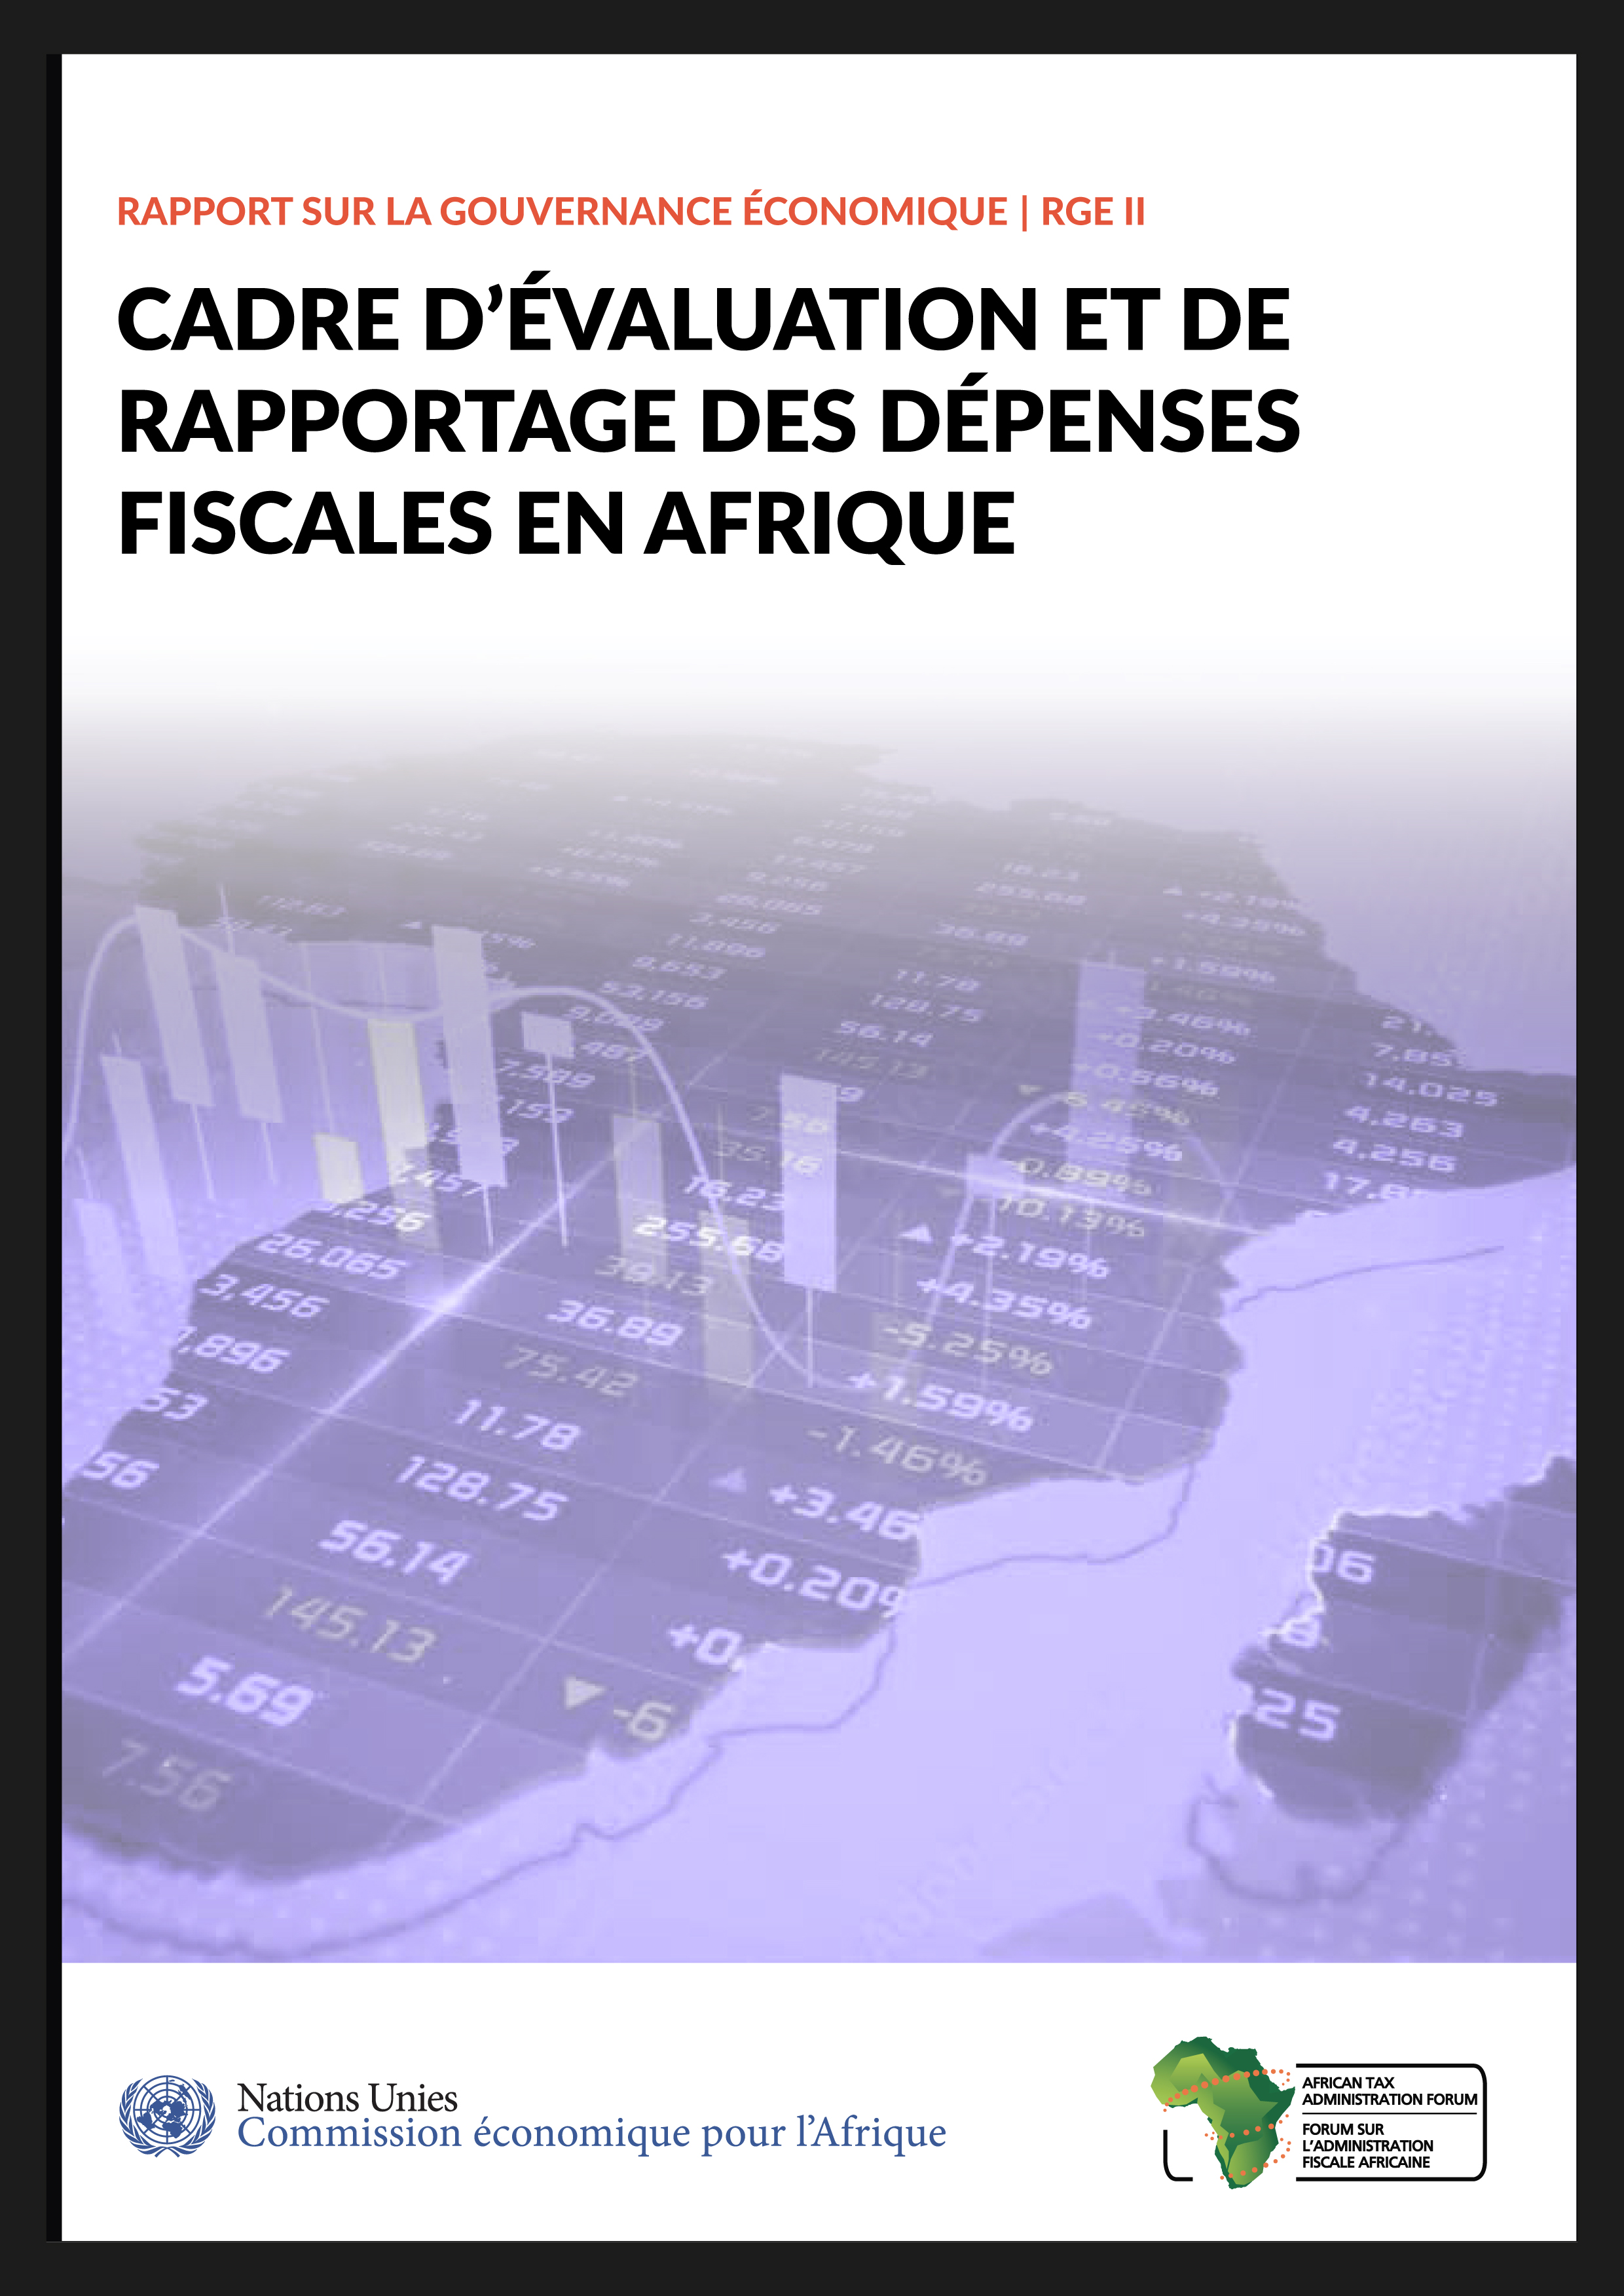 image of Rapport sur la gouvernance économique II: Cadre d’évaluation et de rapportage des dépenses fiscales en afrique